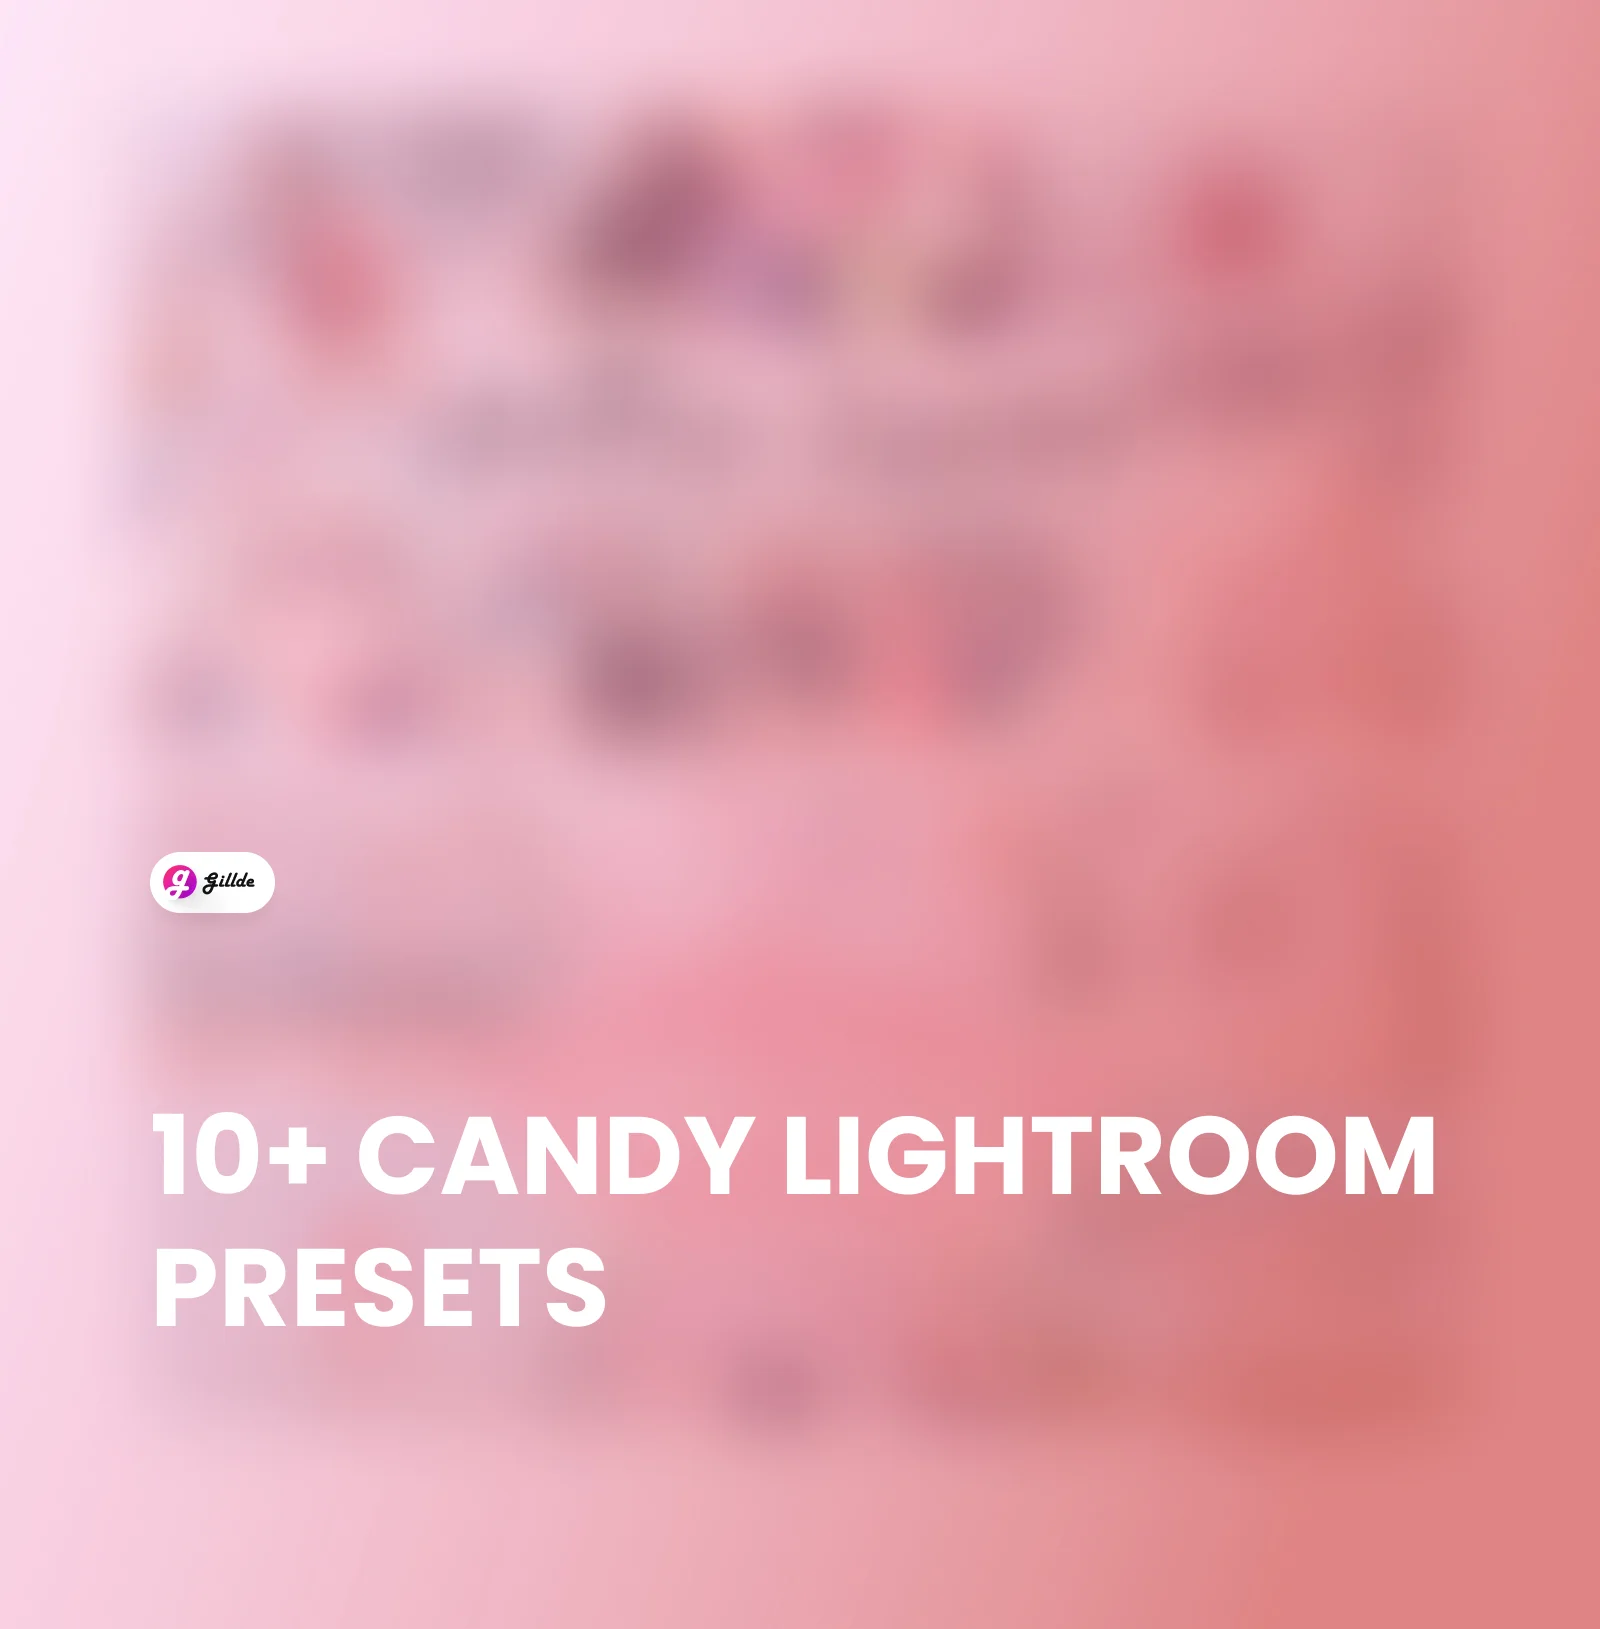 Candy Lightroom Presets